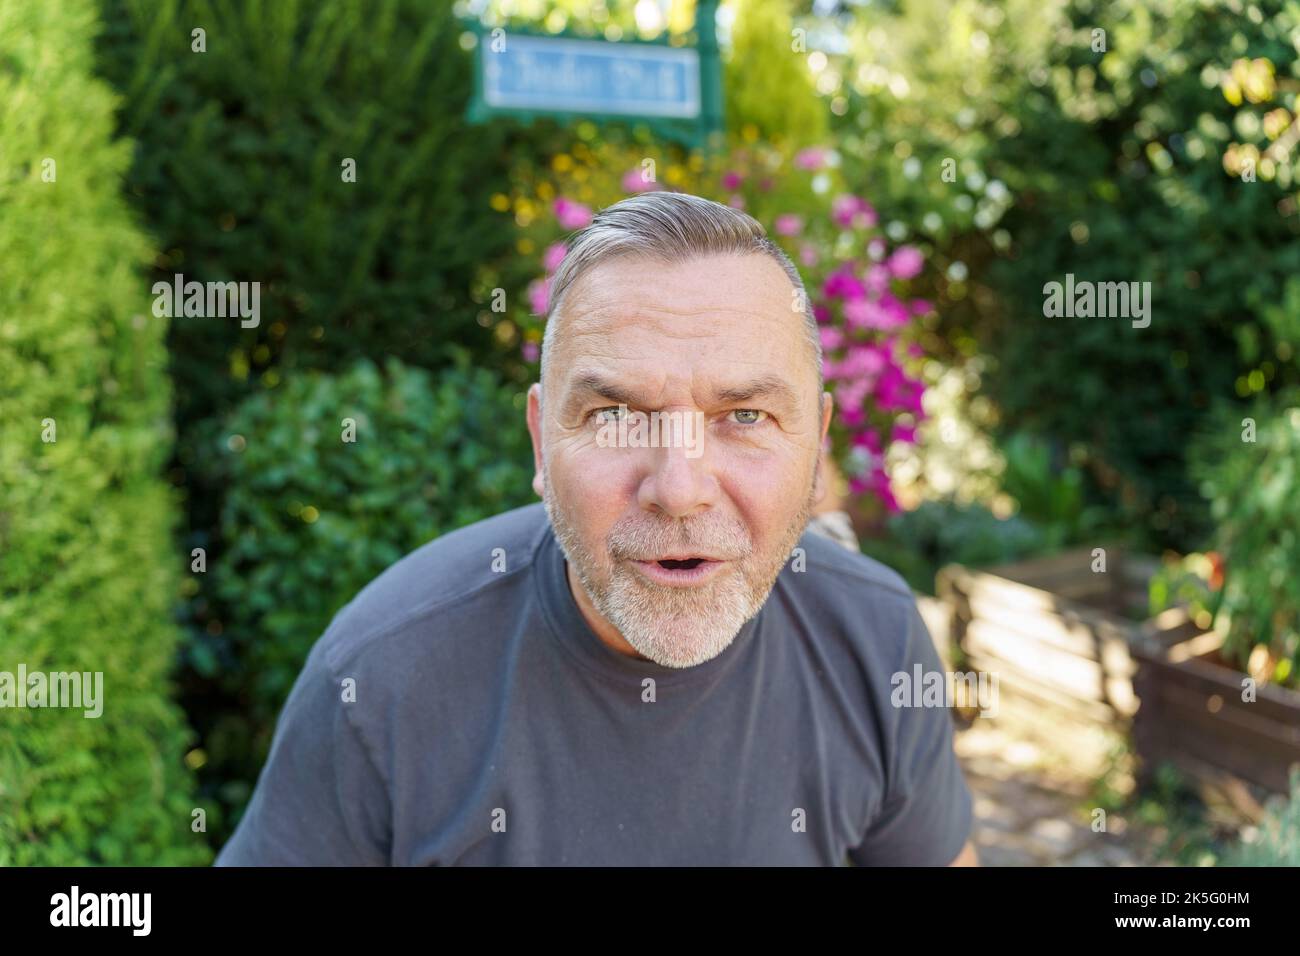 Uomo di mezza età che parla fissando con intelligenza la telecamera mentre si inclina in avanti con un'espressione seria Foto Stock